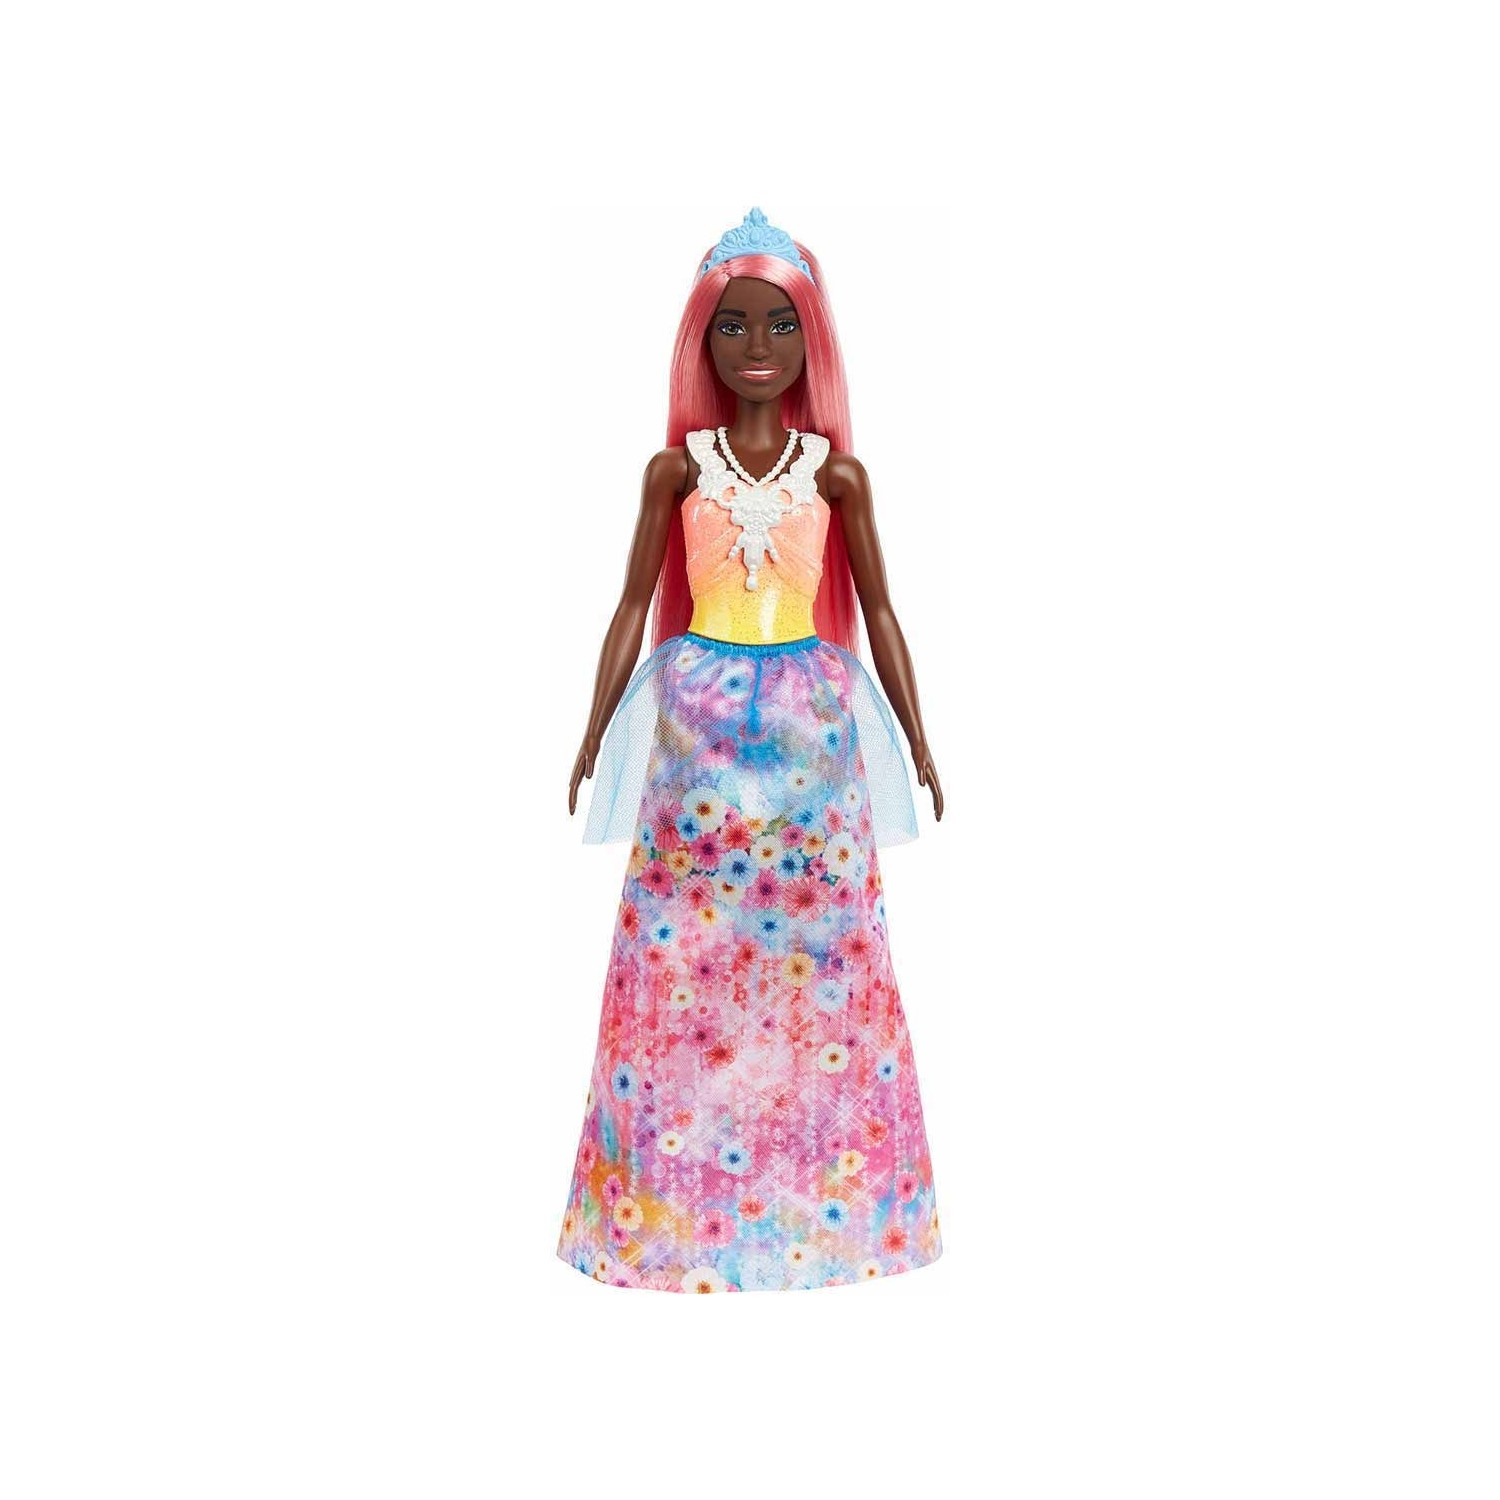 Кукла Barbie Dreamtopia Princess Dolls Series HGR14